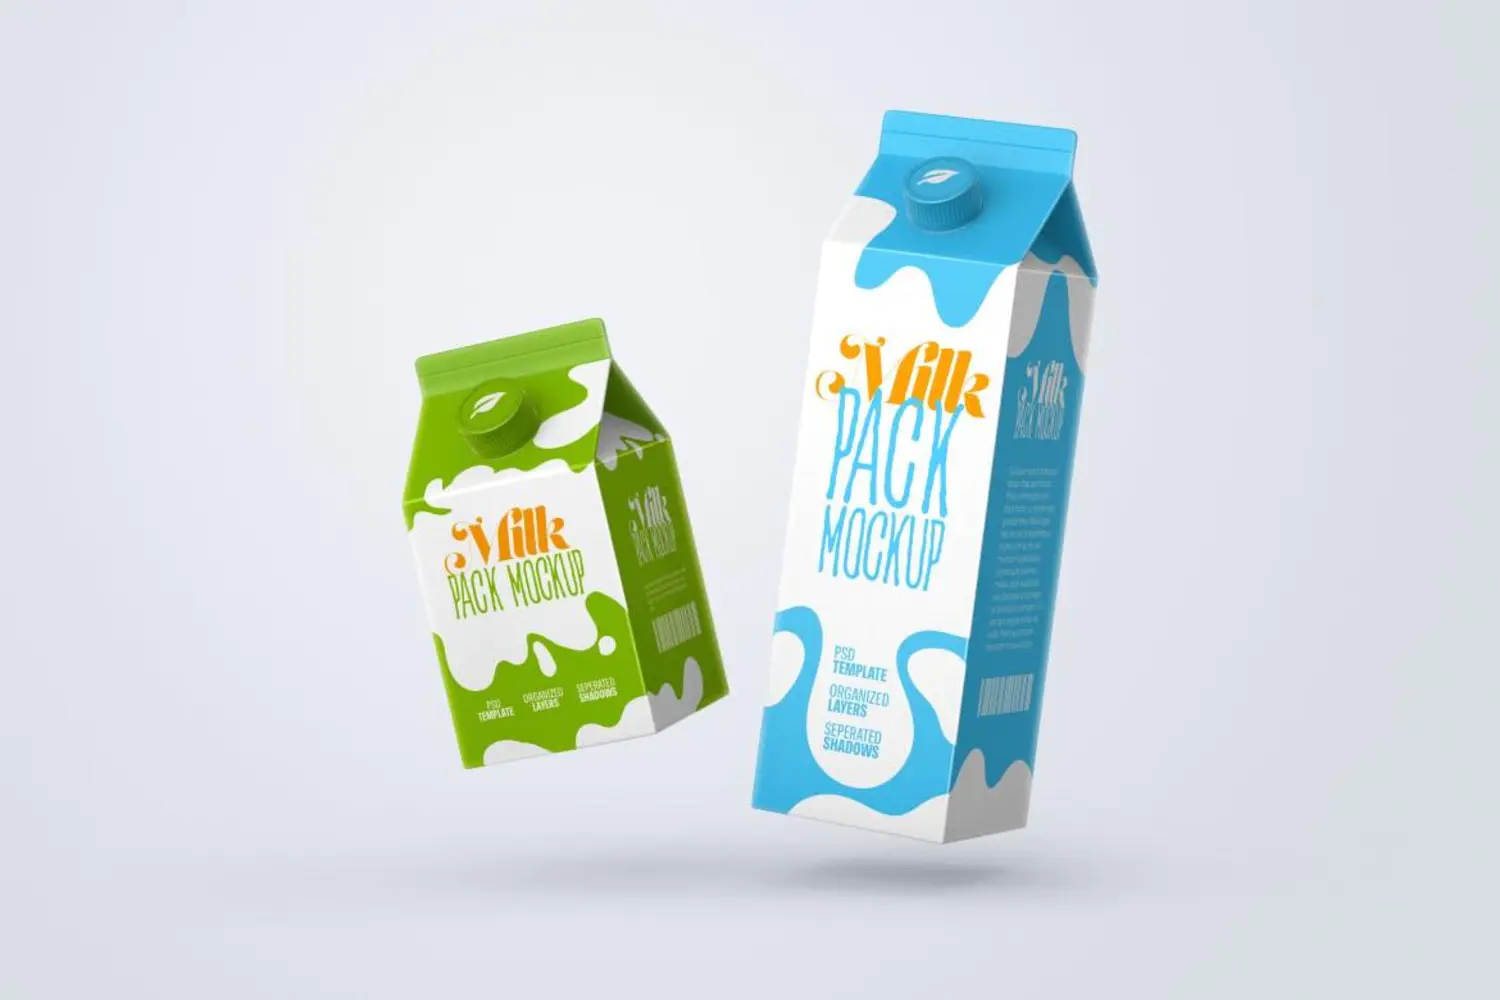 93 扭盖牛奶饮品苹果醋纸盒包装设计样机集v2 Milk Carton Box Mockup Set  Packaging Design